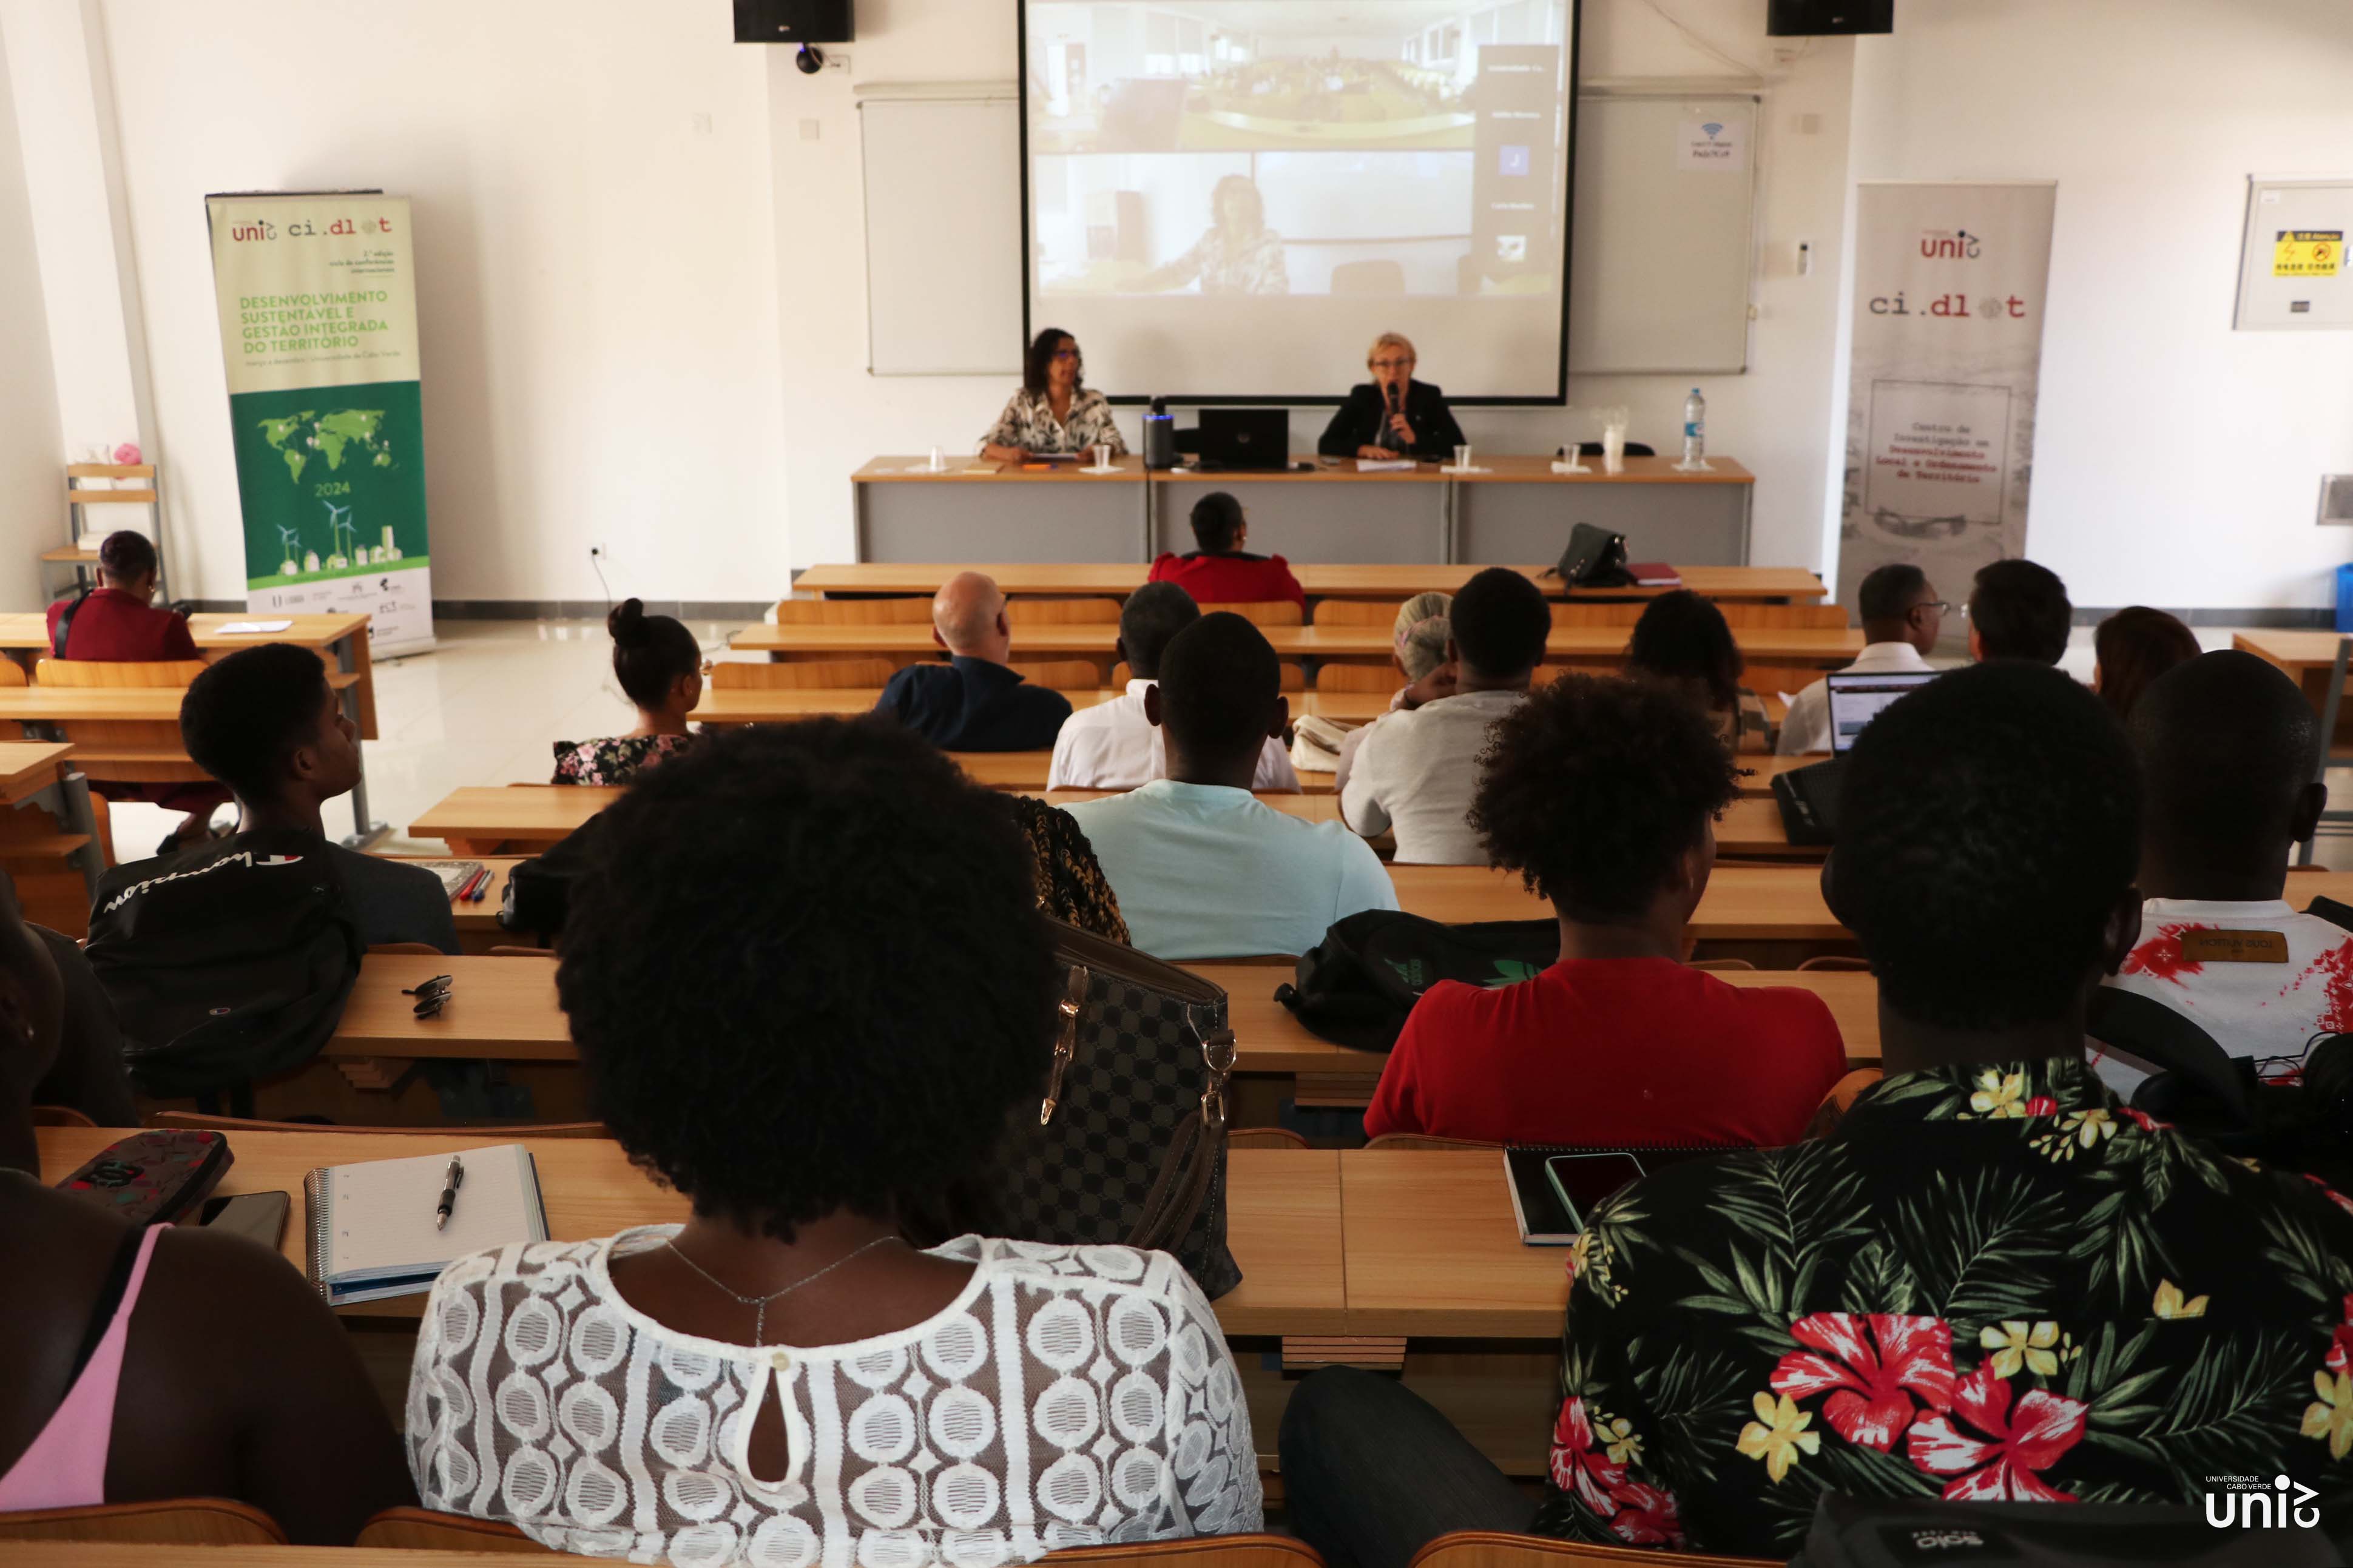 Uni-CV inicia II edição de ciclo de conferências internacionais com foco no desenvolvimento sustentável